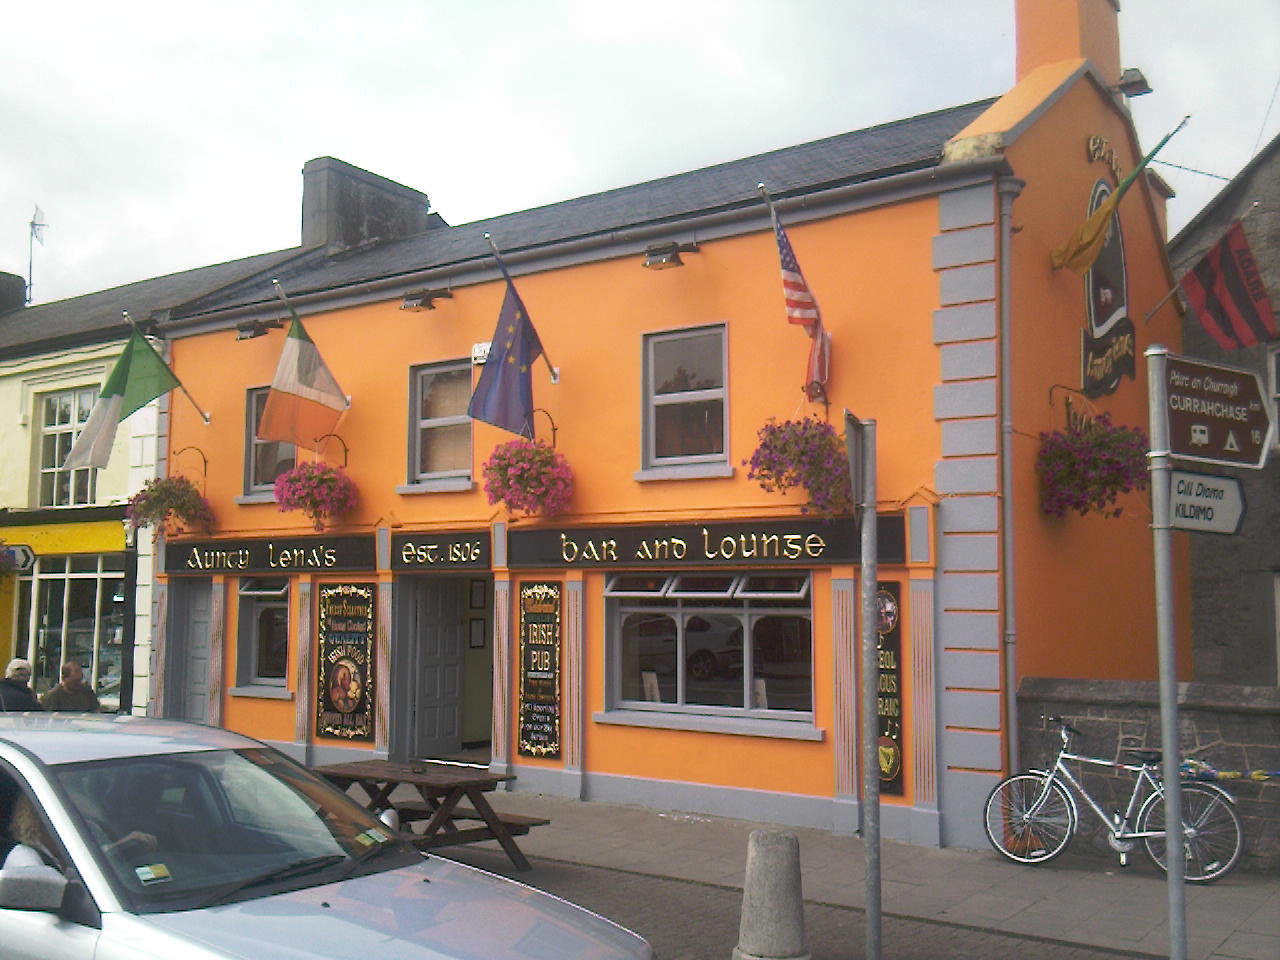 Adare village, Co. Limerick